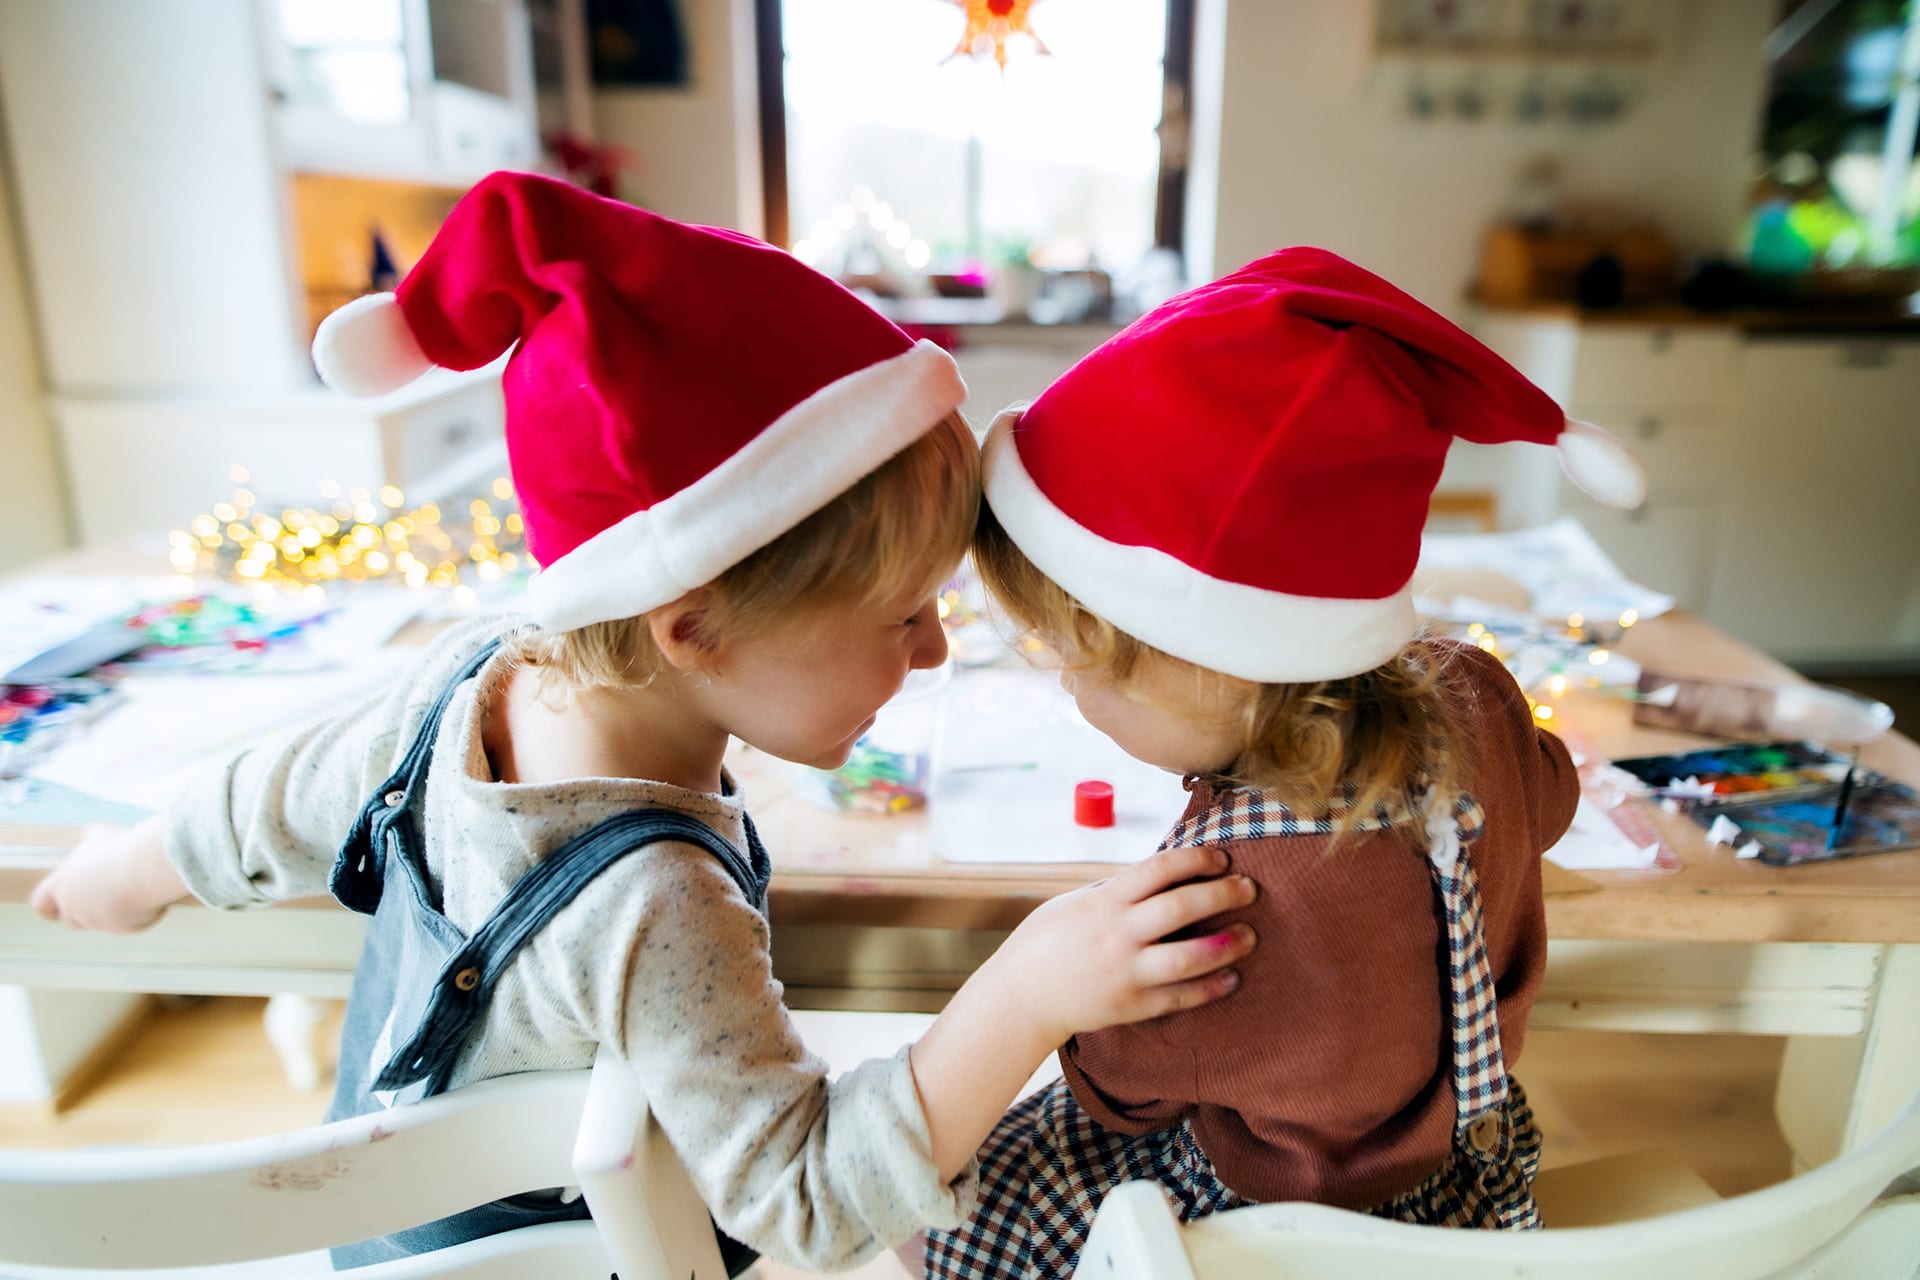 Weihnachts-Wunschzettel | Zwei Kinder mit roten Weihnachtsmützen sitzen am Tisch und basteln